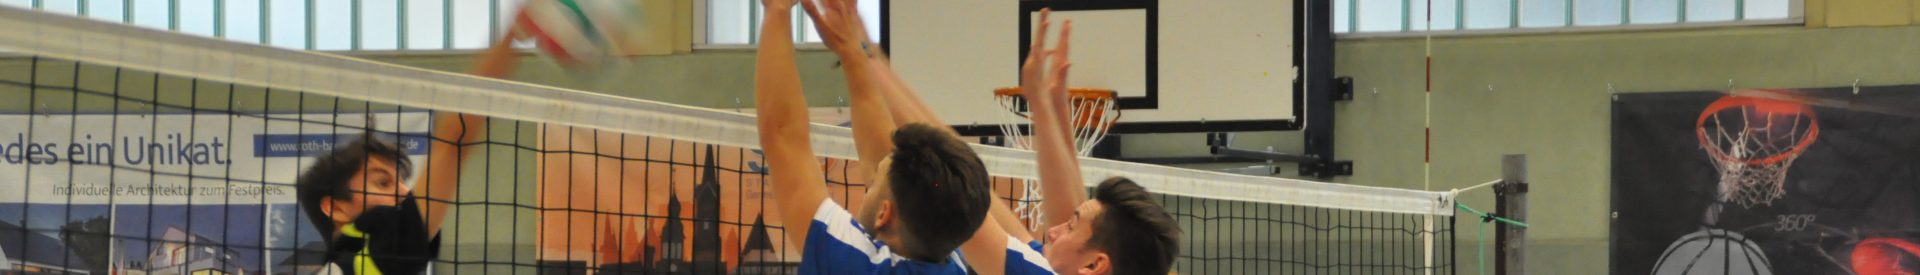 6. Germersheimer Beachvolleyball-Stadtmeisterschaft – Sport, Spaß und gute Laune